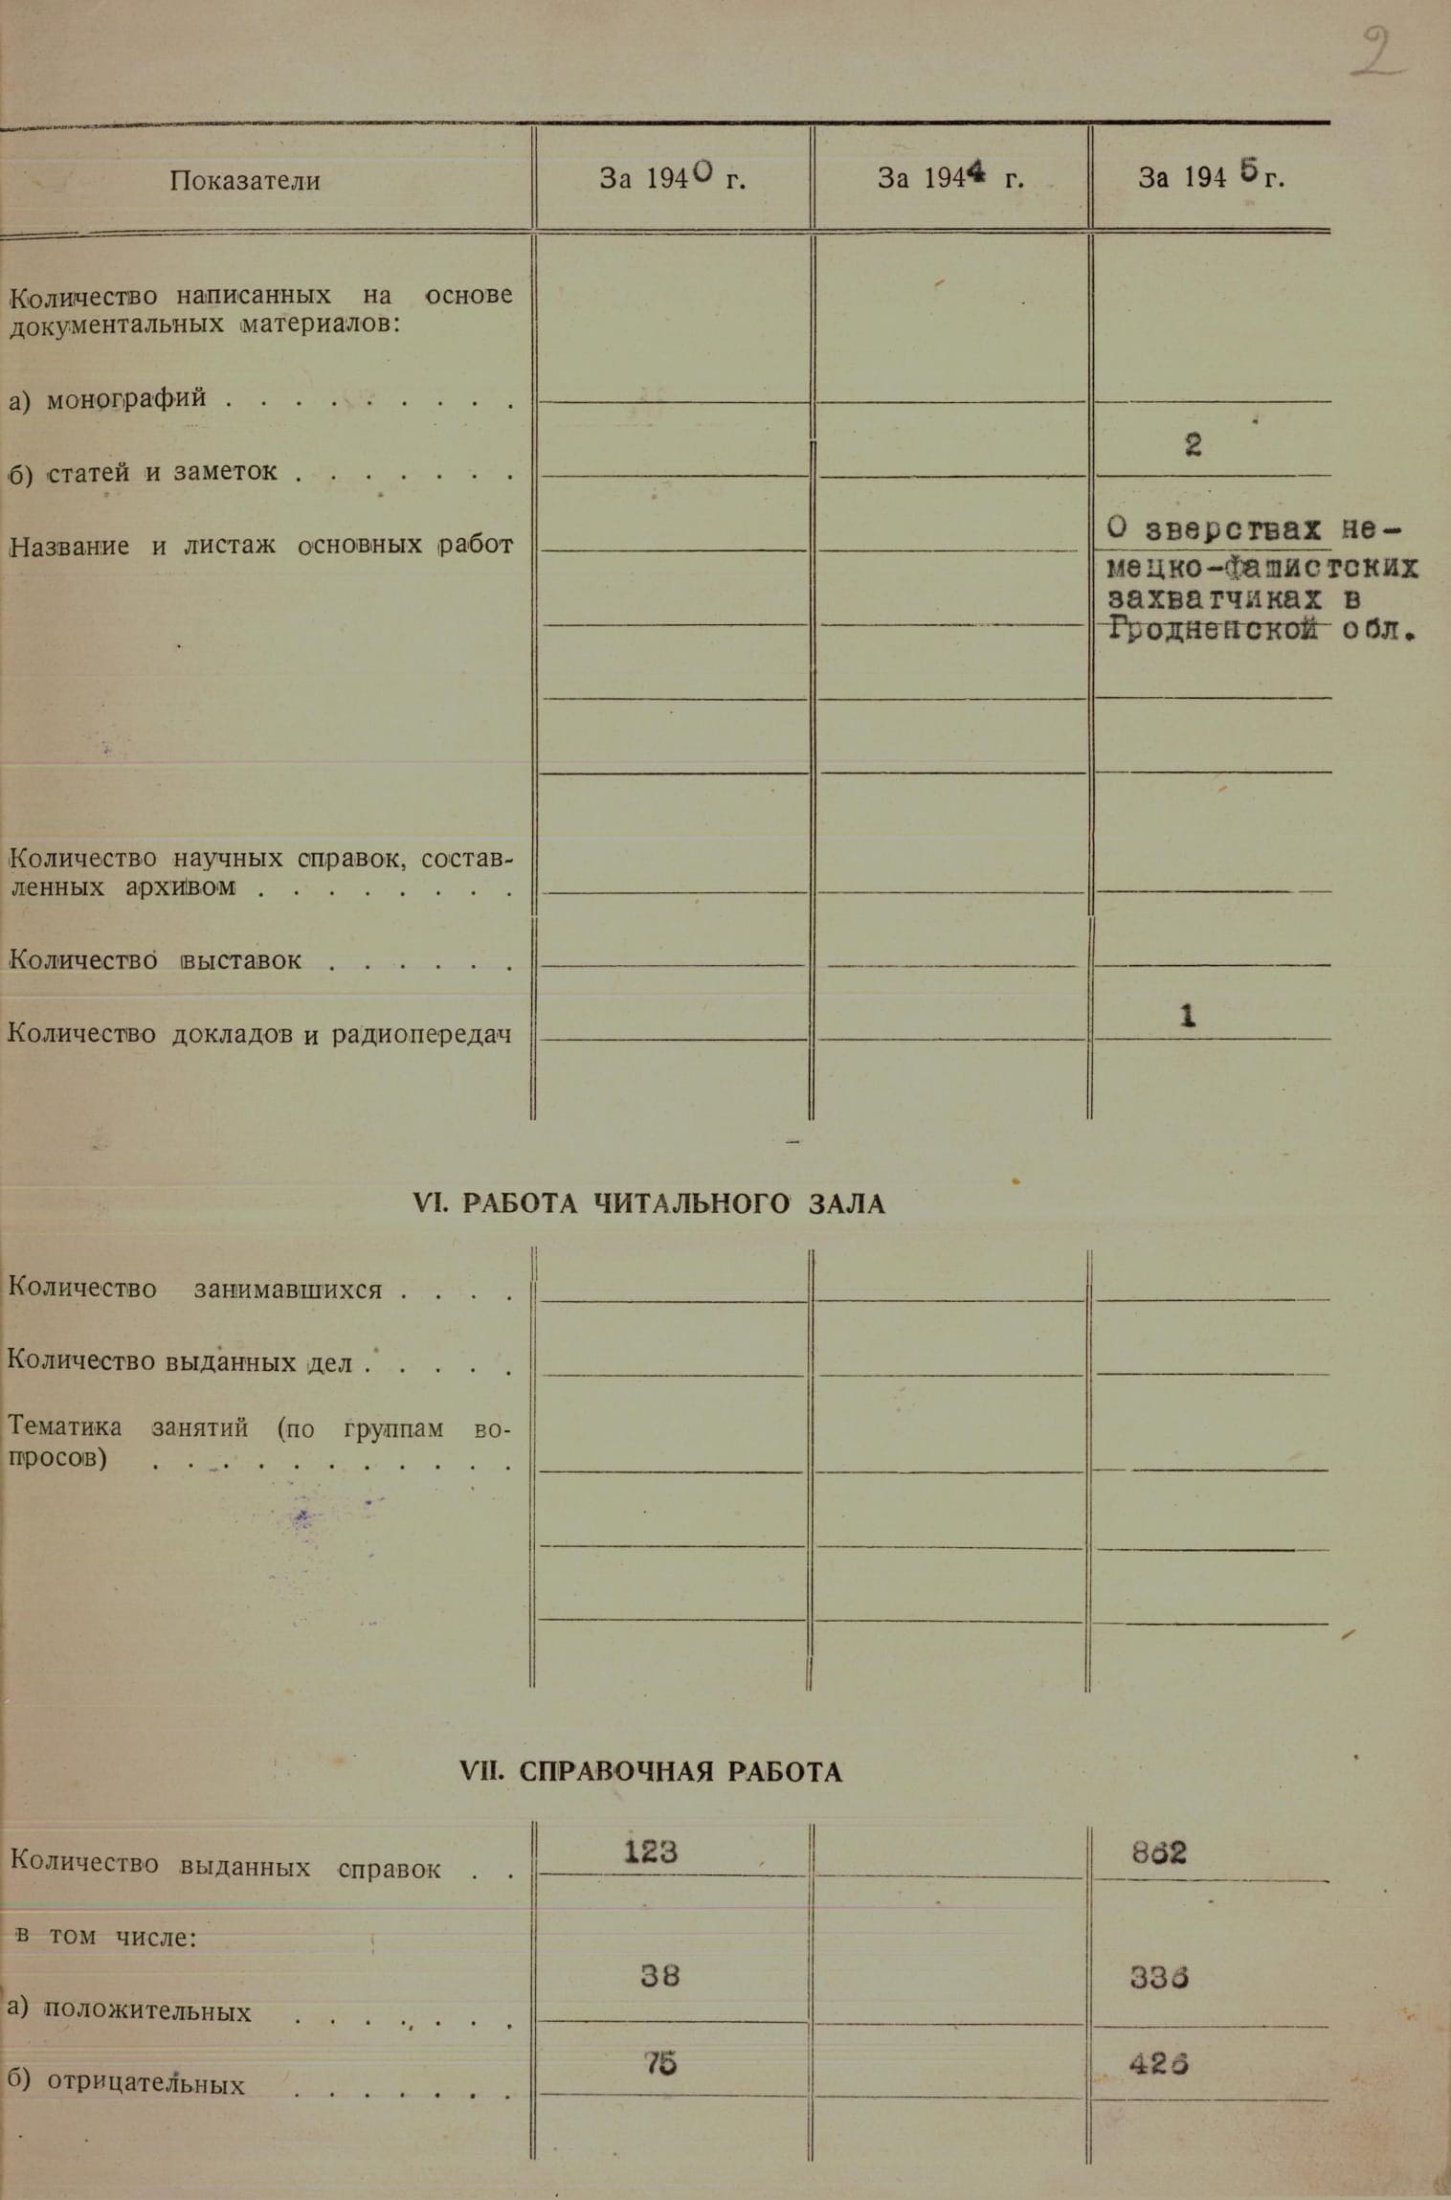 Паспорт Государственного архива Гродненской области на 1941, 1945, 1946 годы. 	Ф. 393. Оп. 1. Д. 1. Л. 2.